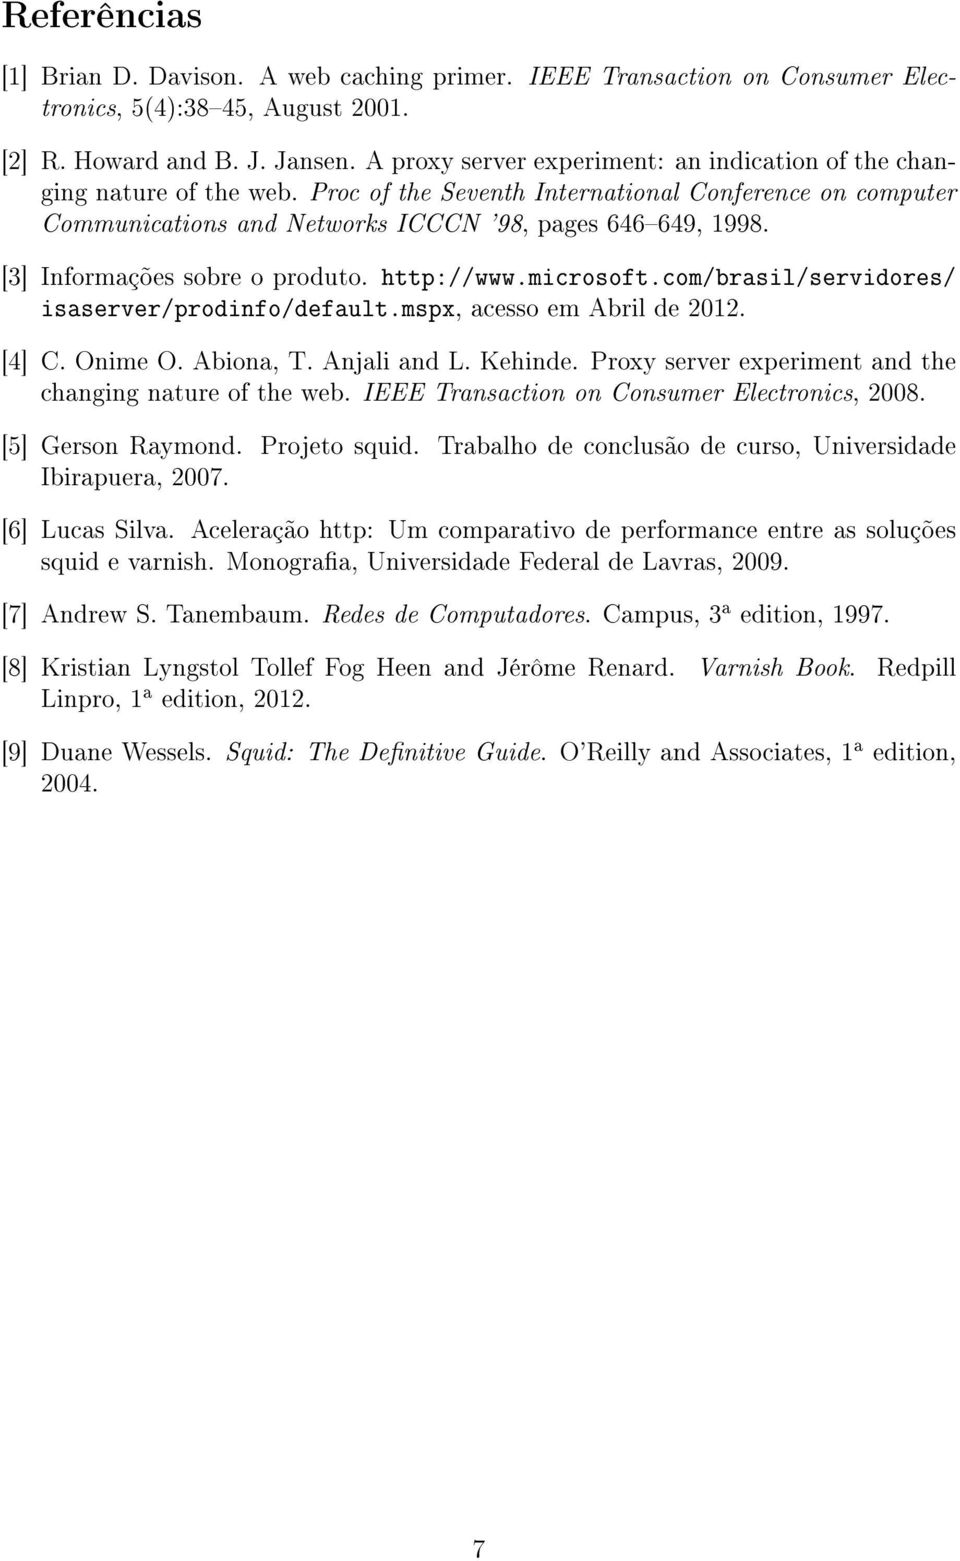 [3] Informações sobre o produto. http://www.microsoft.com/brasil/servidores/ isaserver/prodinfo/default.mspx, acesso em Abril de 2012. [4] C. Onime O. Abiona, T. Anjali and L. Kehinde.